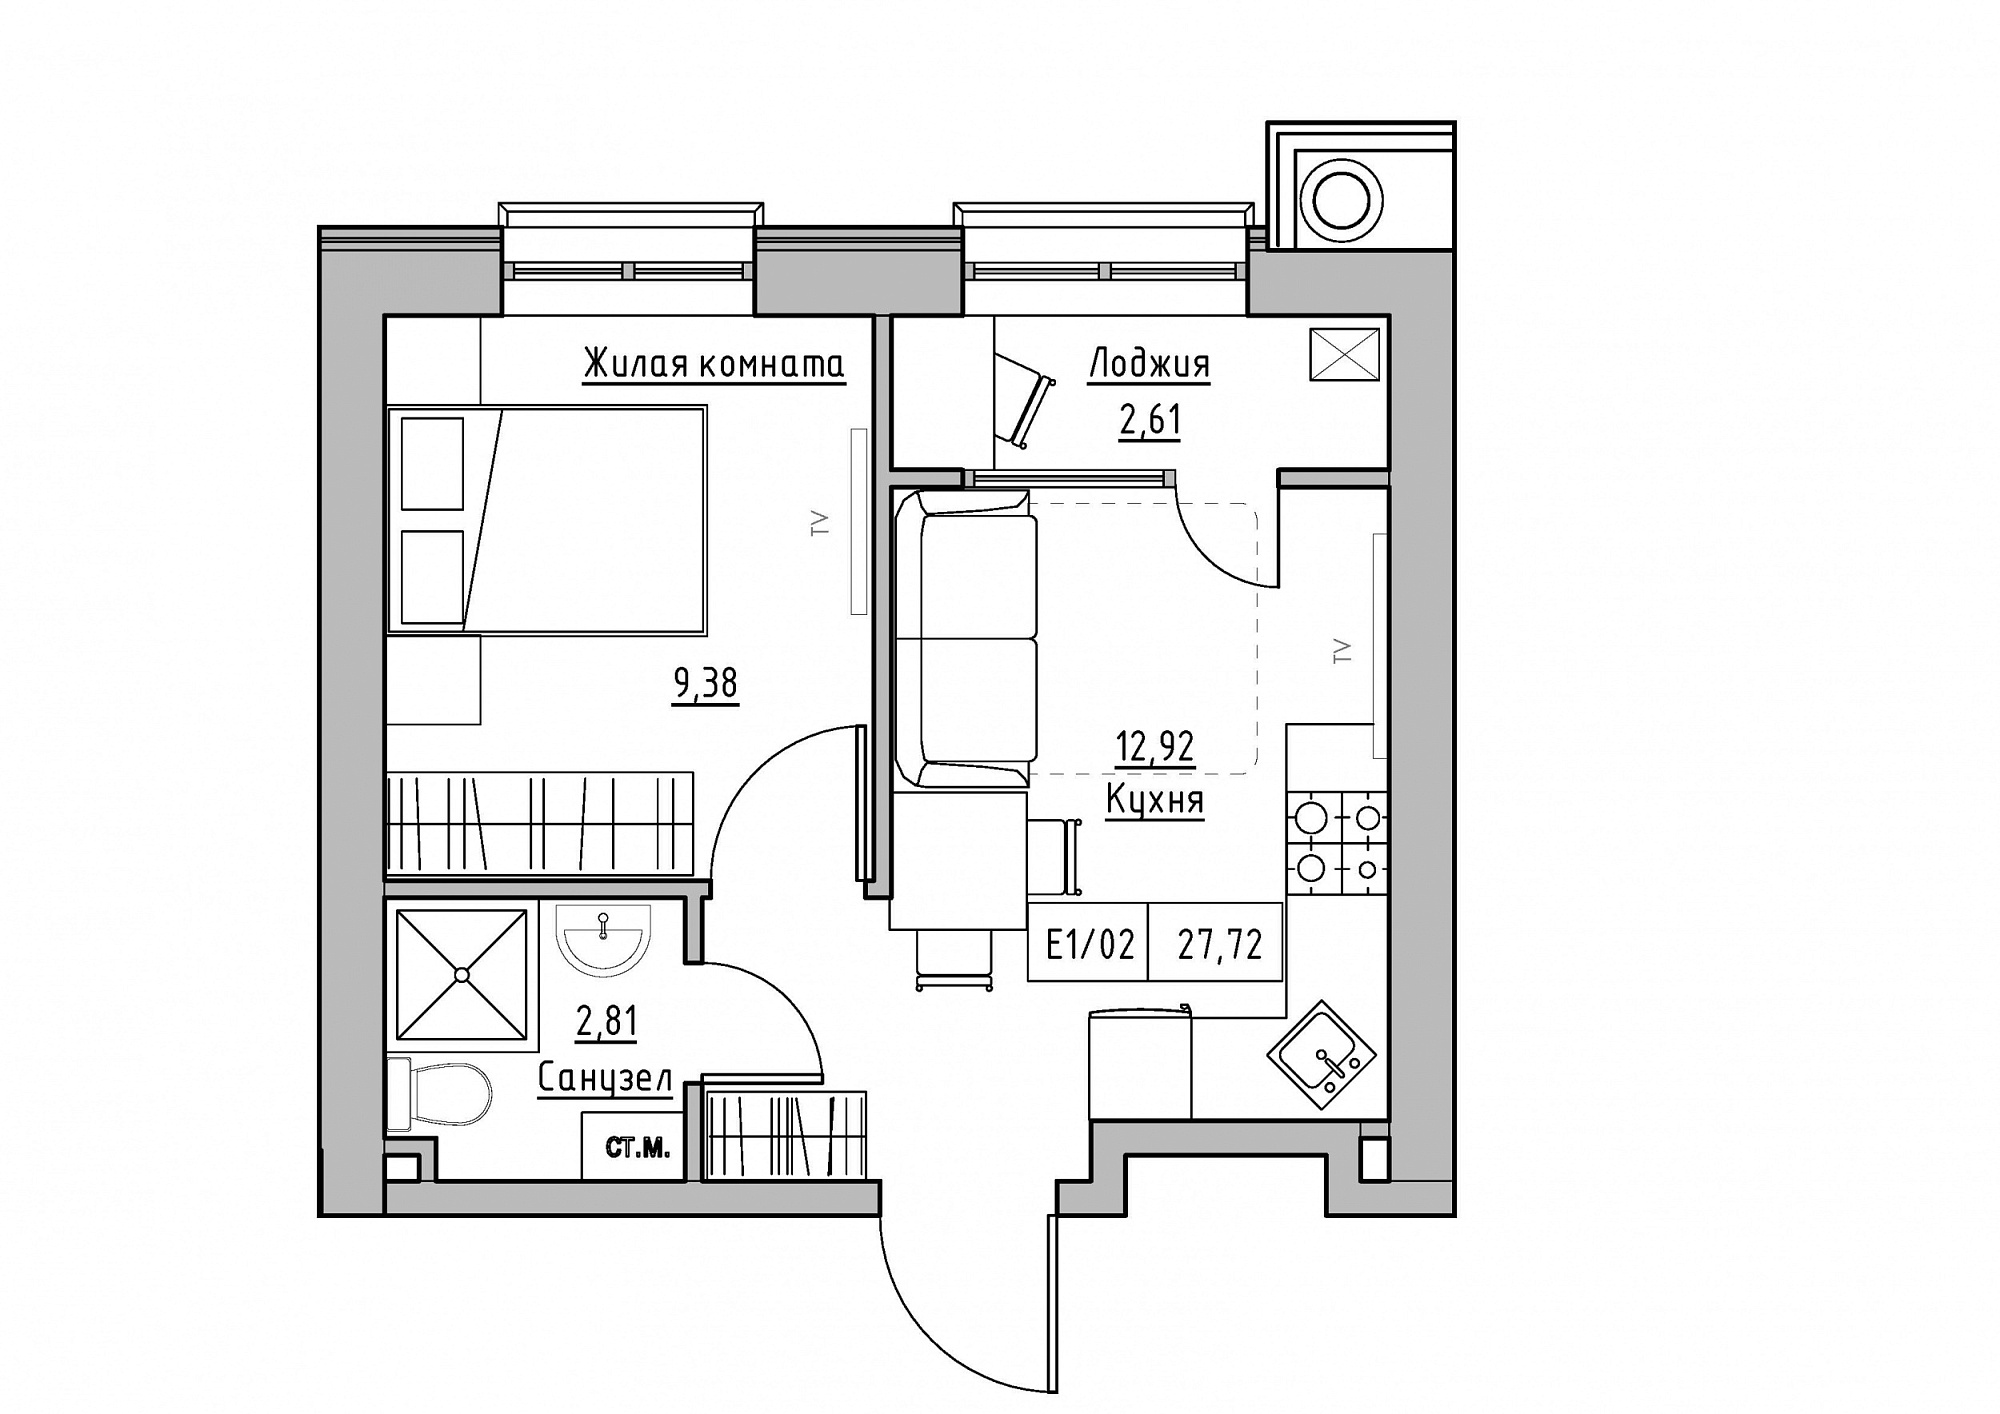 Планування 1-к квартира площею 27.72м2, KS-012-01/0001.